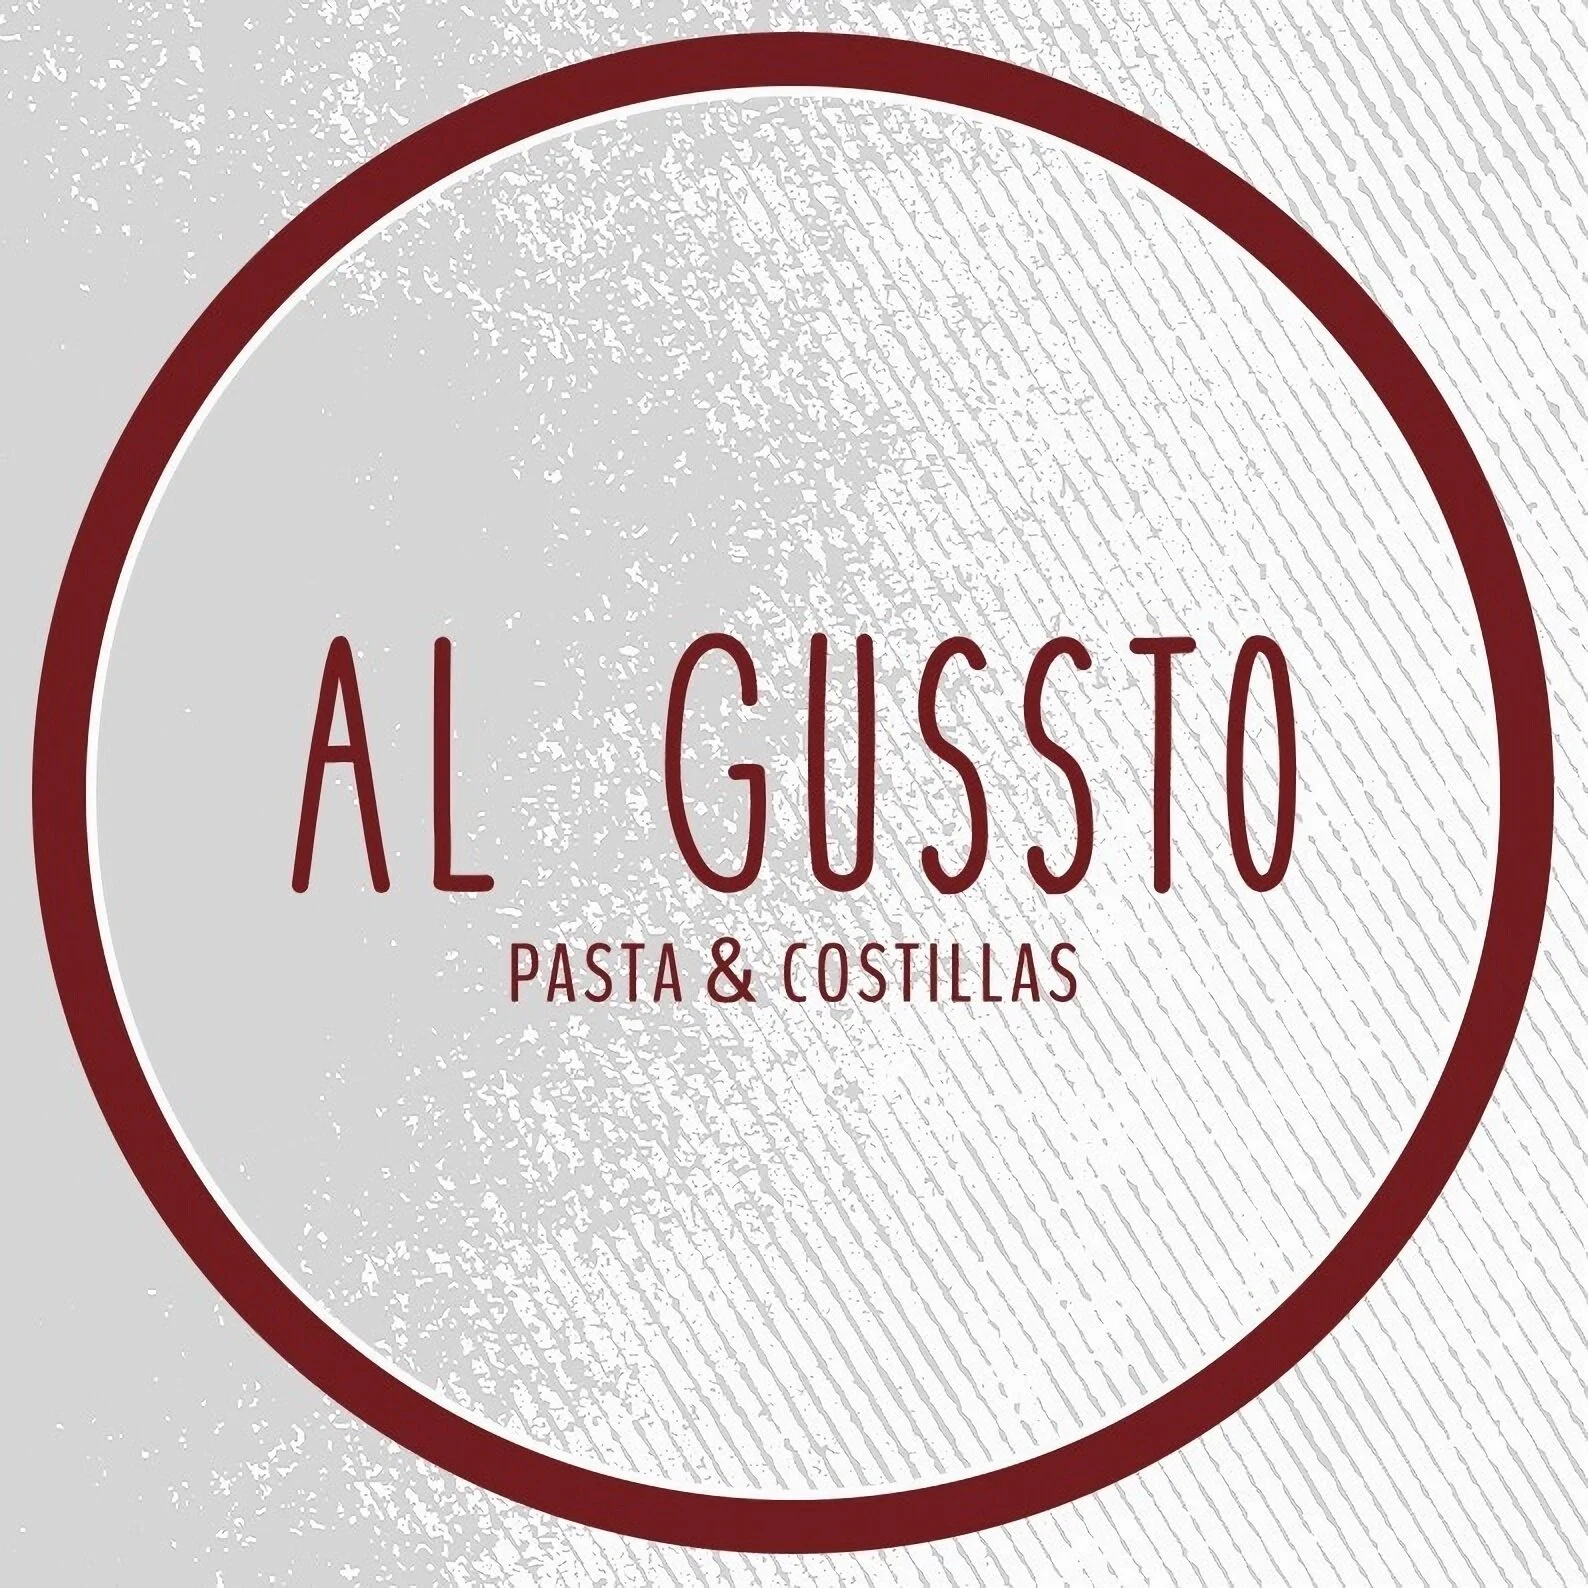 Restaurante-algussto-pasta-costilla-24857